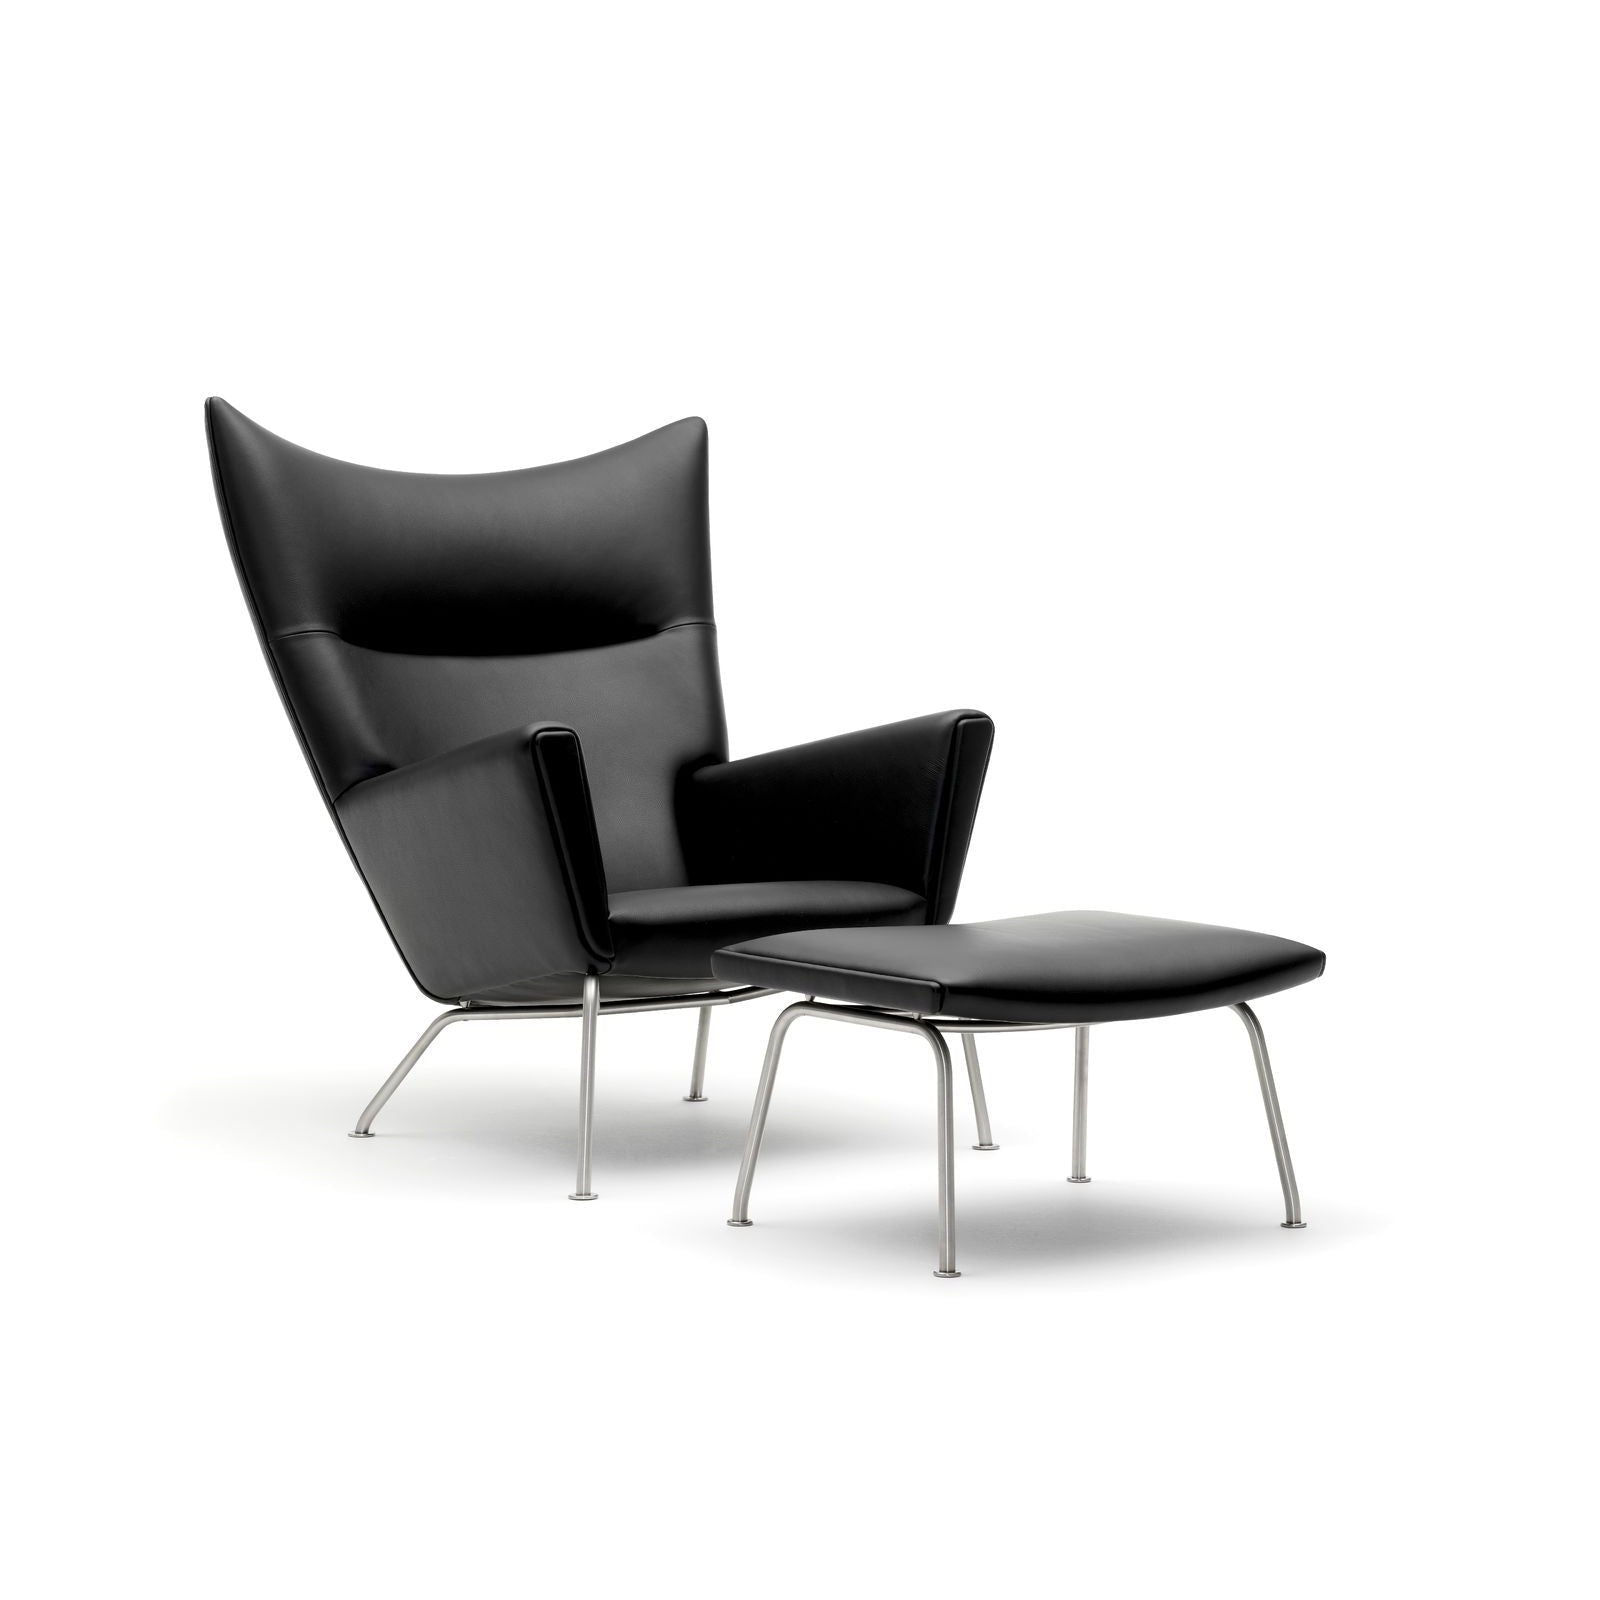 Carl Hansen CH445 Ala sedia, tessuto nero in acciaio /grigio chiaro